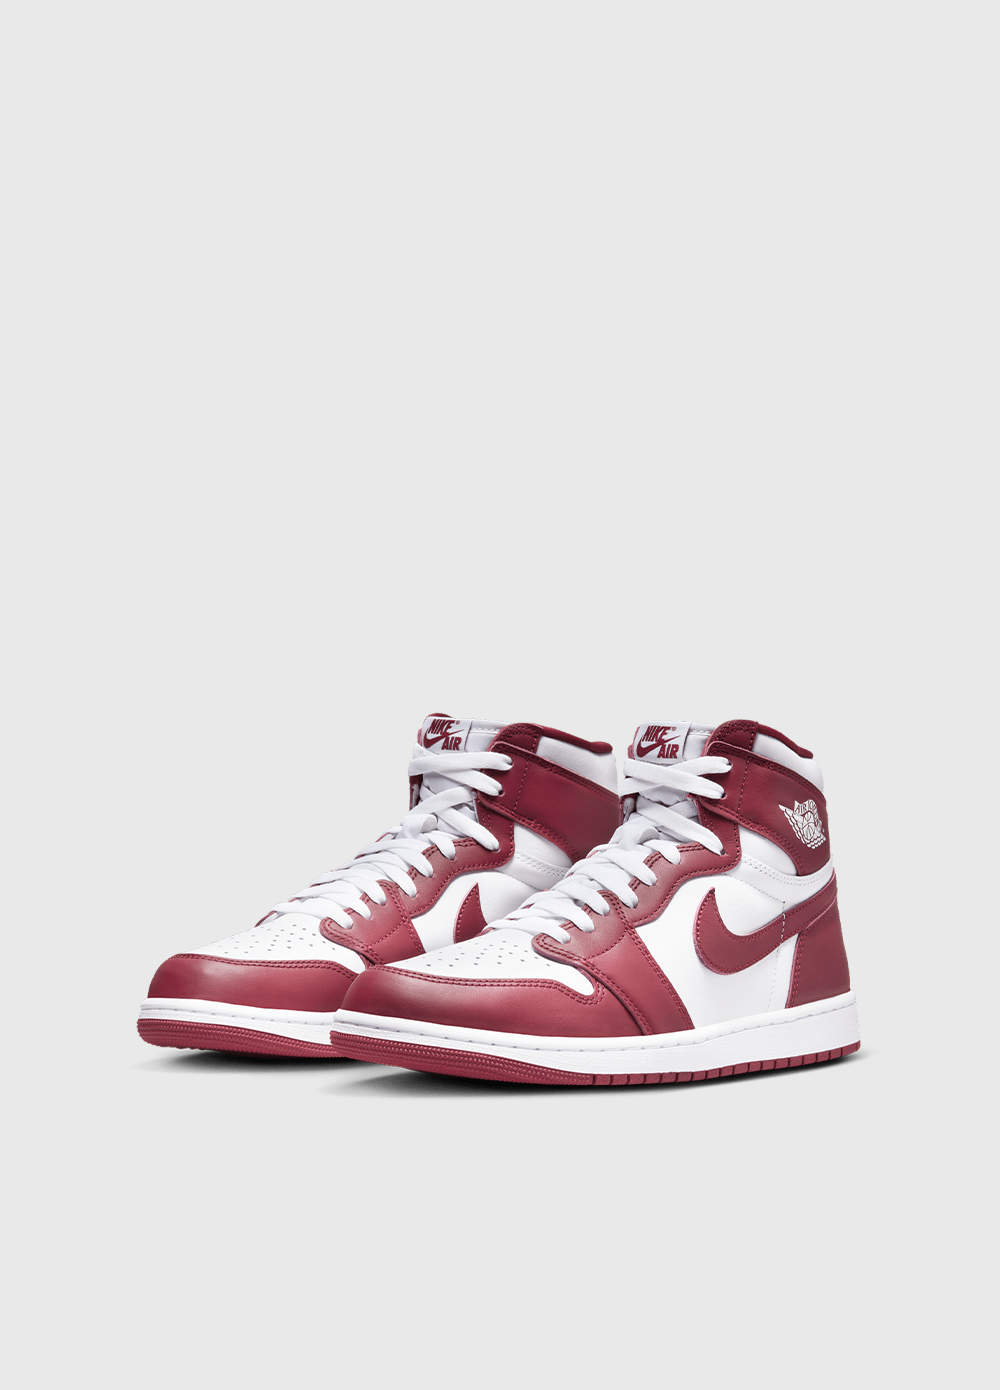 Air Jordan 1 Retro High OG 'Team Red' Sneakers